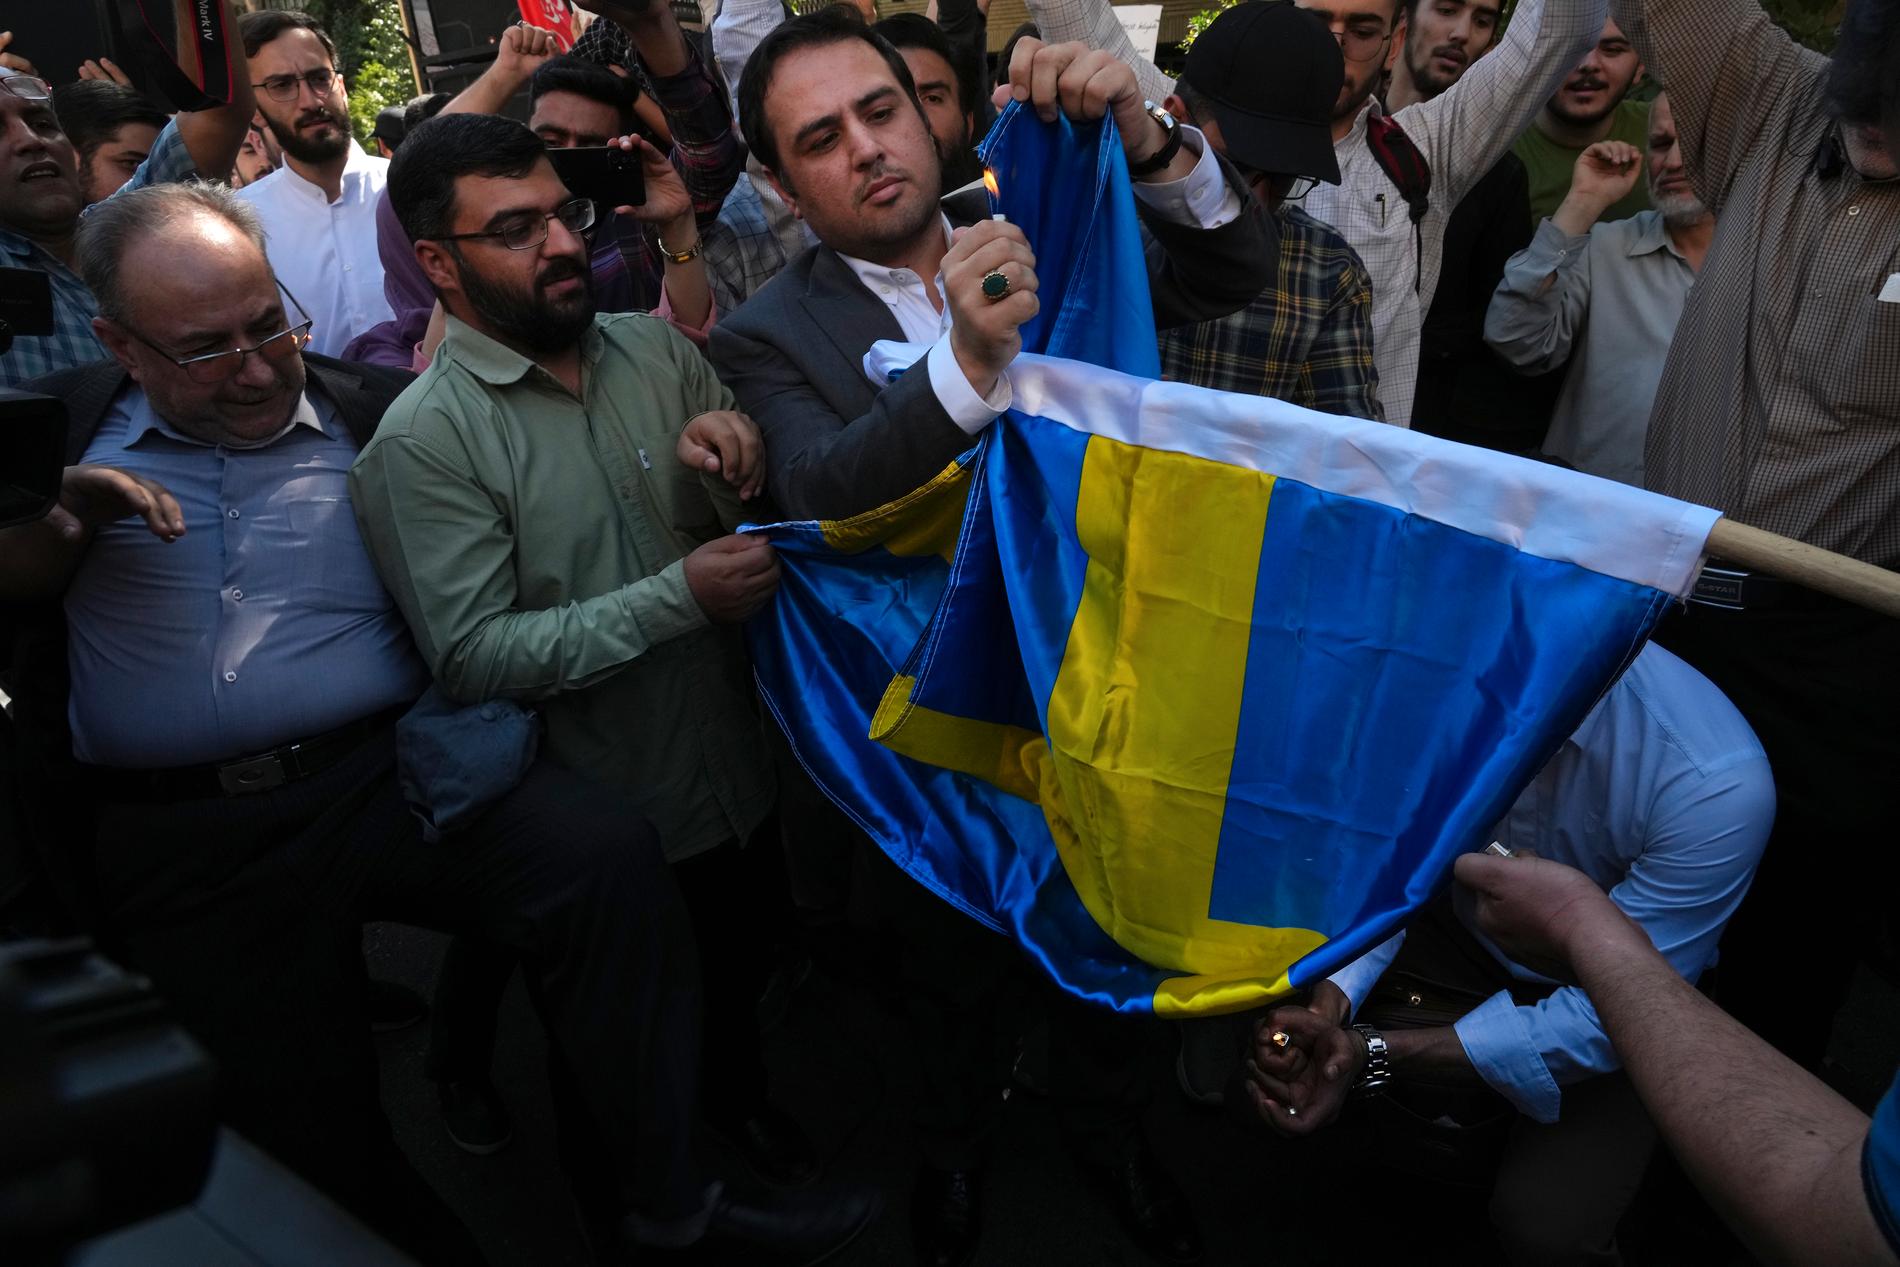 En koranbränning i Stockholm orsakade stora protester mot Sverige. Bland annat brändes en svensk flagga utanför Sverige ambassad i Iran.